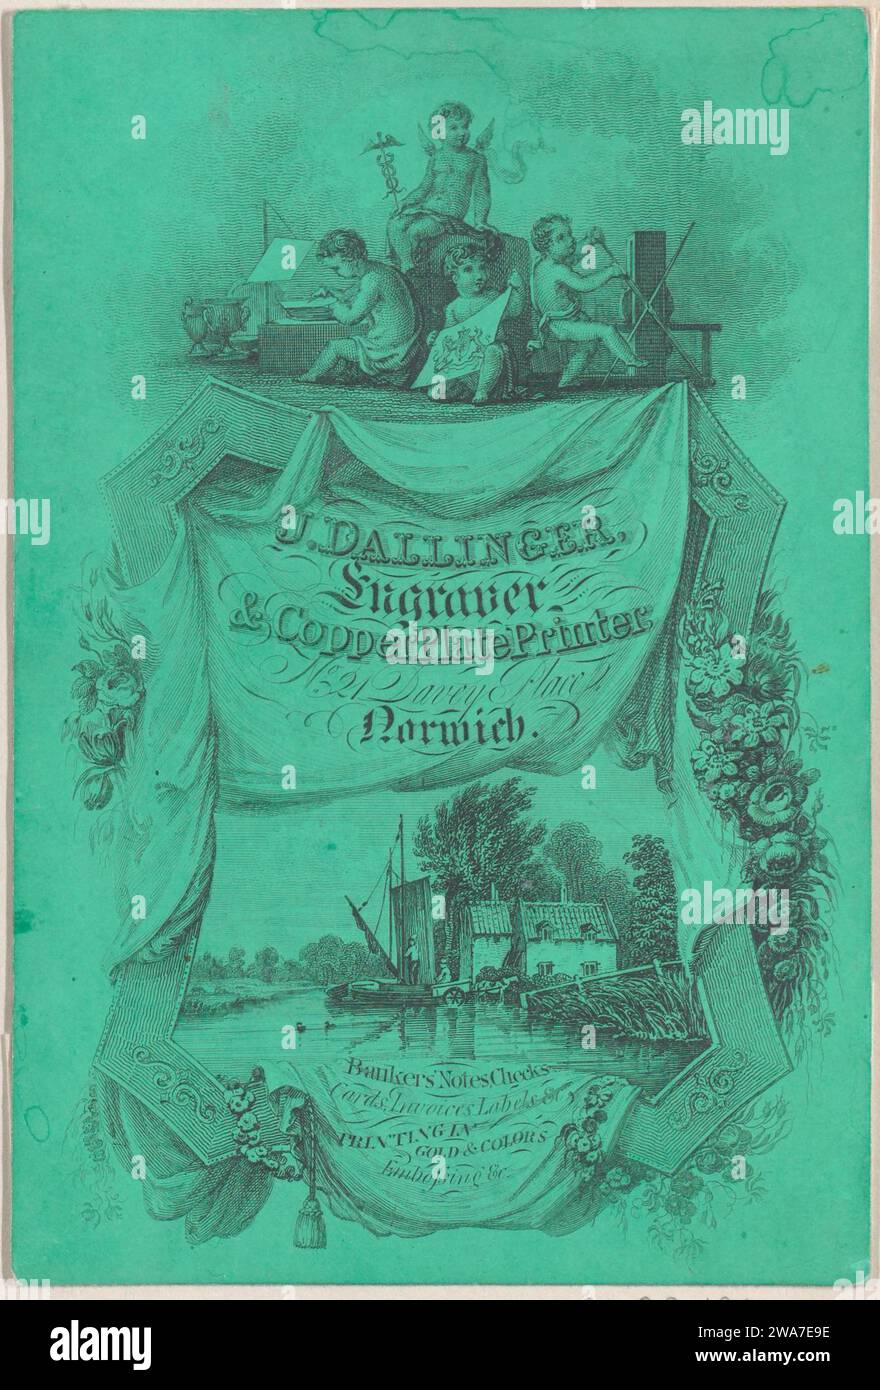 Carte commerciale pour J. Dallinger, graveur et imprimeur de plaques de cuivre 1926 par Anonymous, British, 19e siècle Banque D'Images